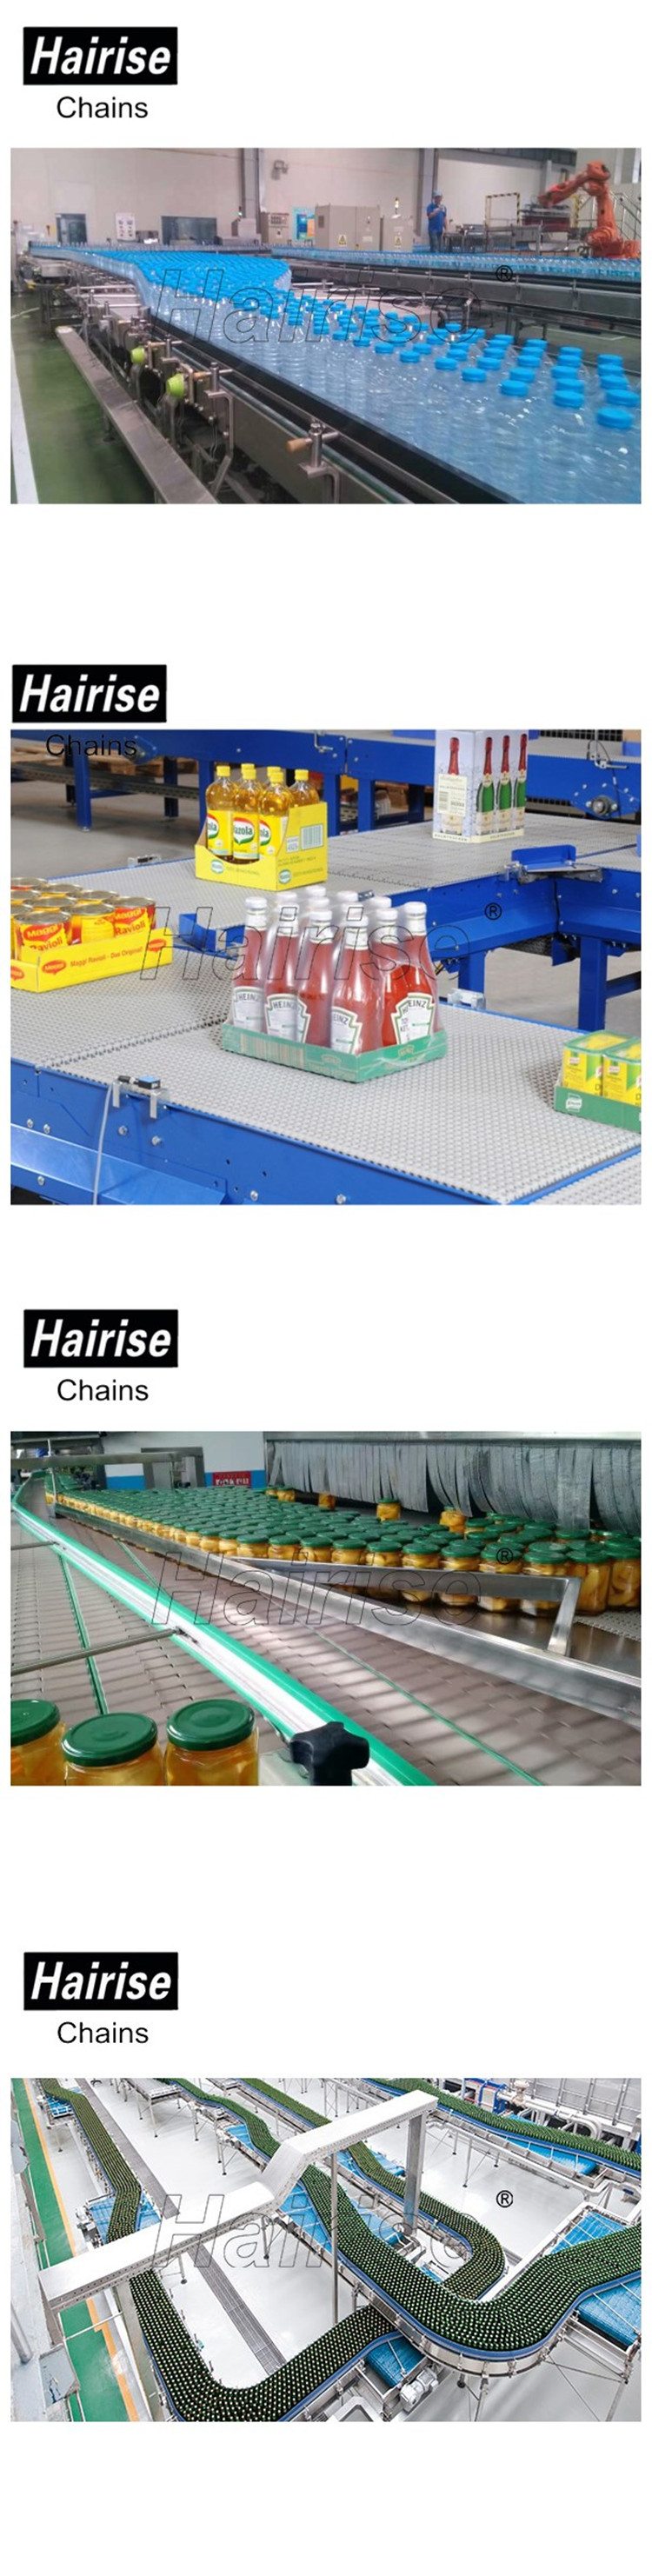 bottles-on-conveyor